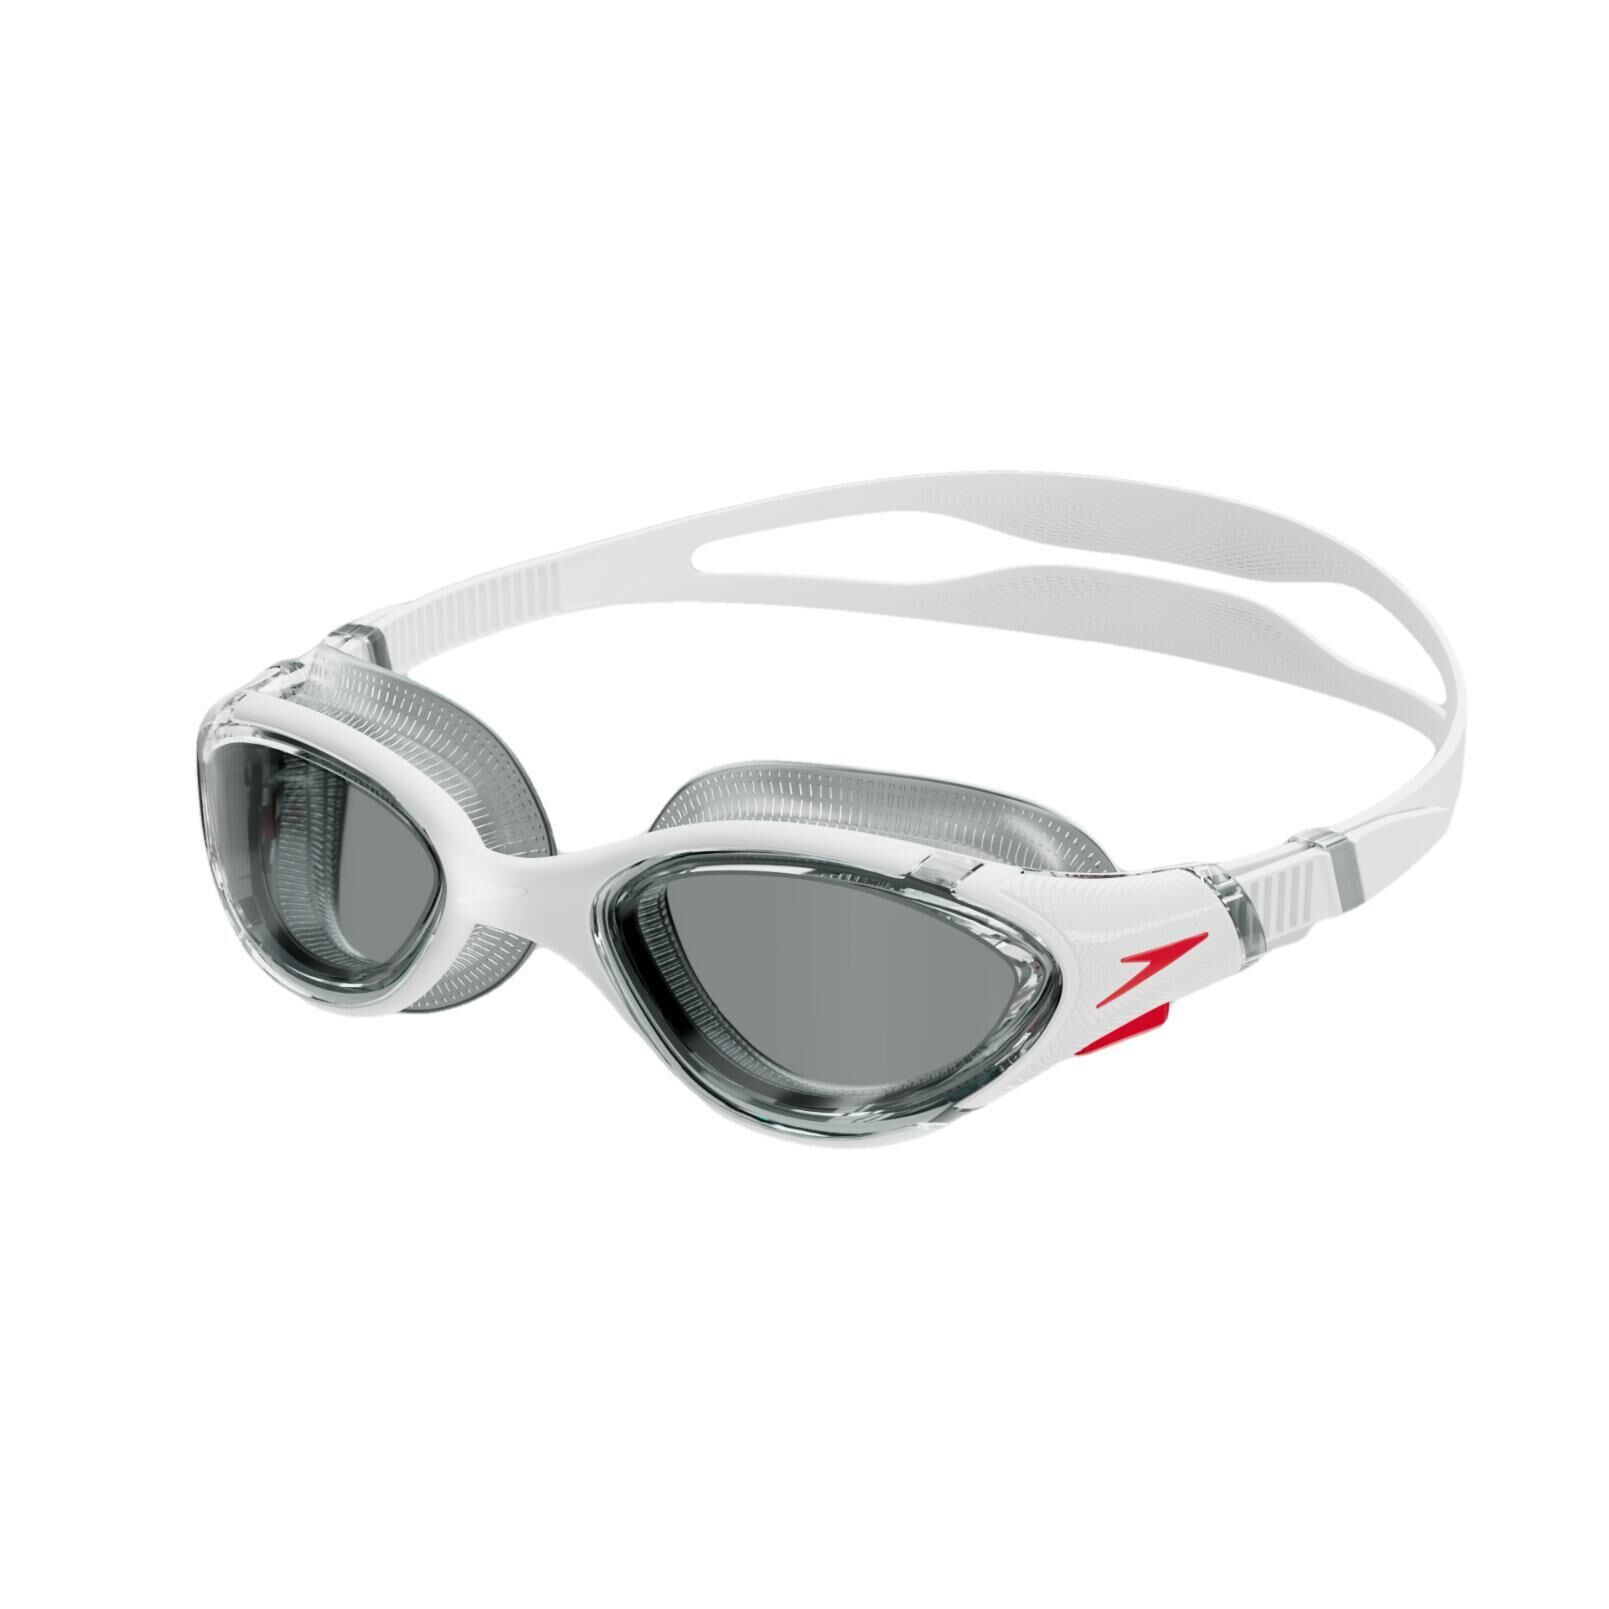 SPEEDO Mens Biofuse Swimming Goggles (White/Red/Smoke)